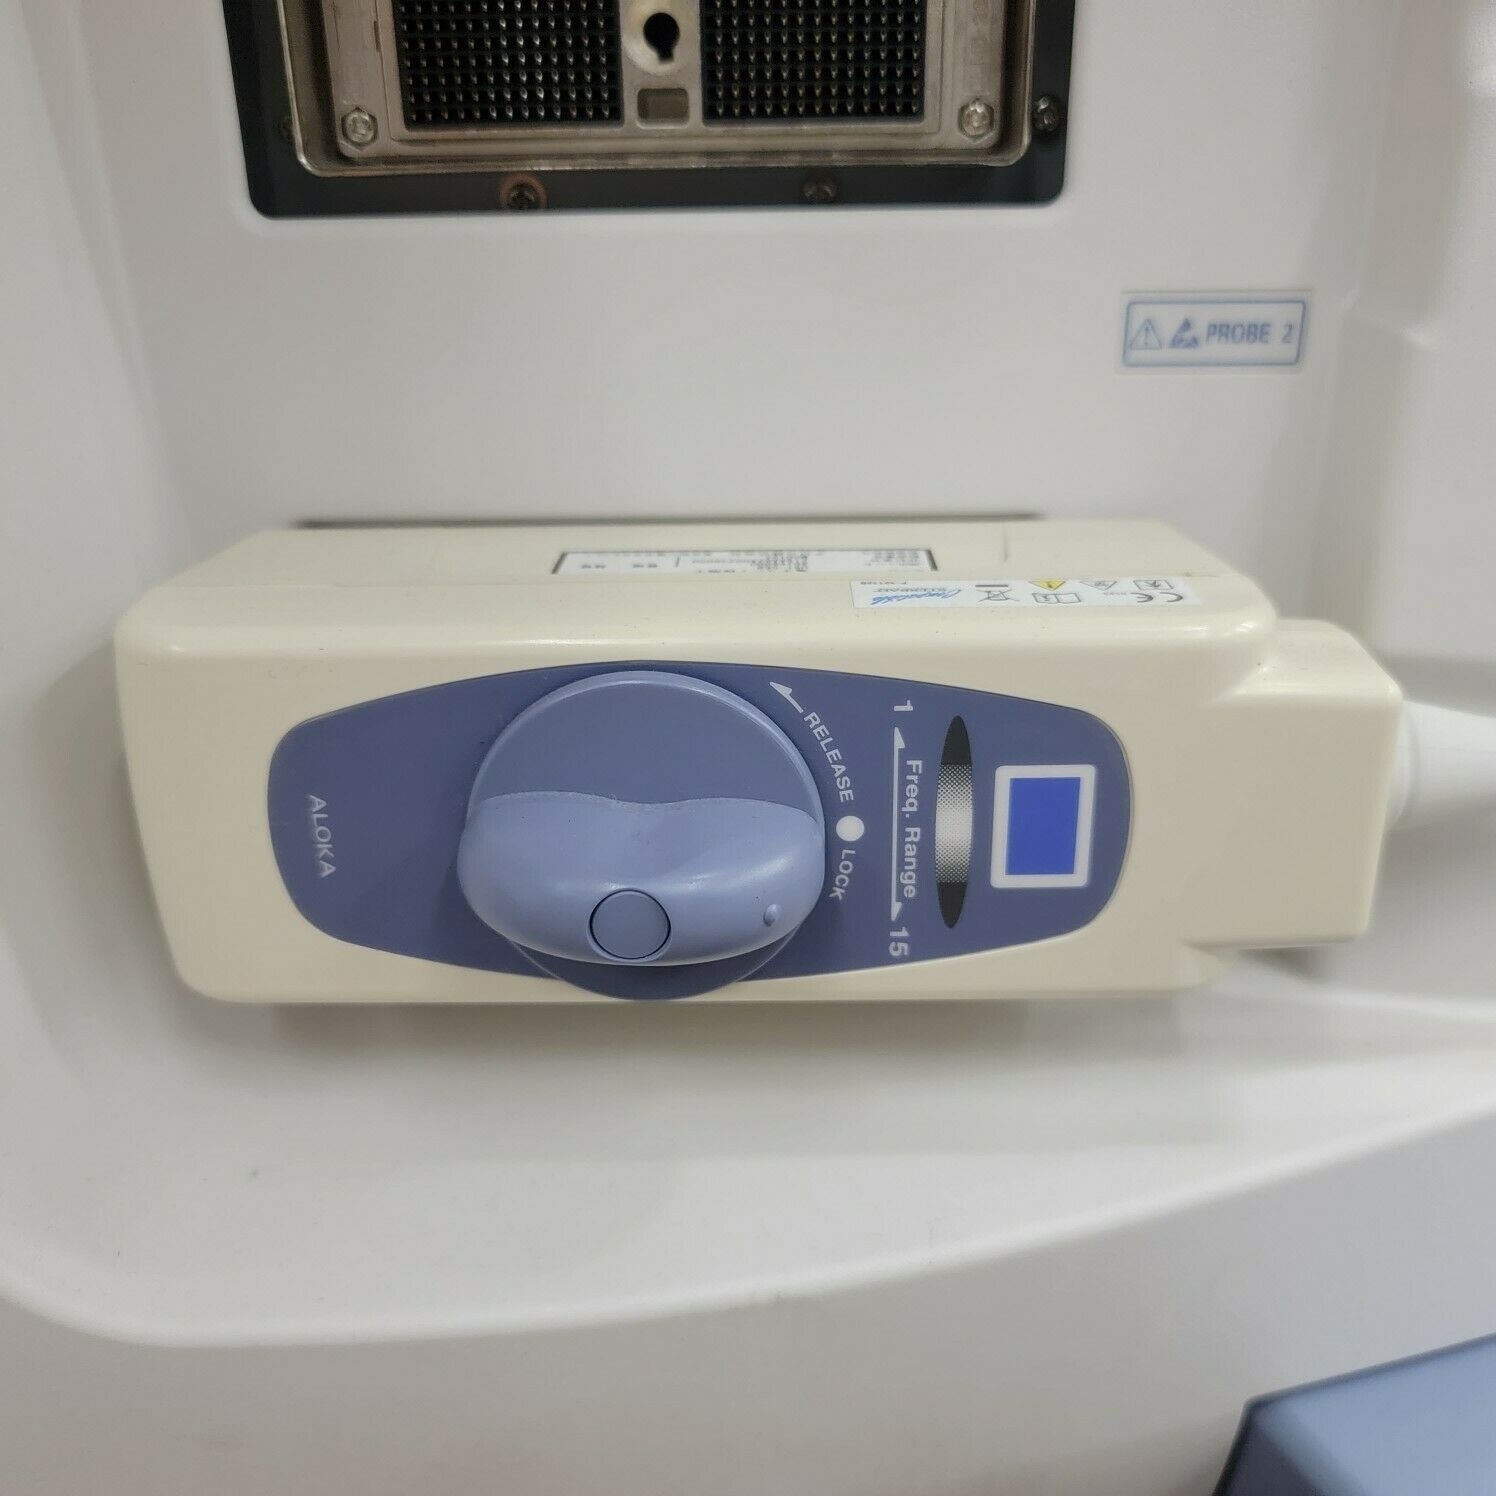 Aloka SSD-3500SX Prosound Ultrasound System DIAGNOSTIC ULTRASOUND MACHINES FOR SALE